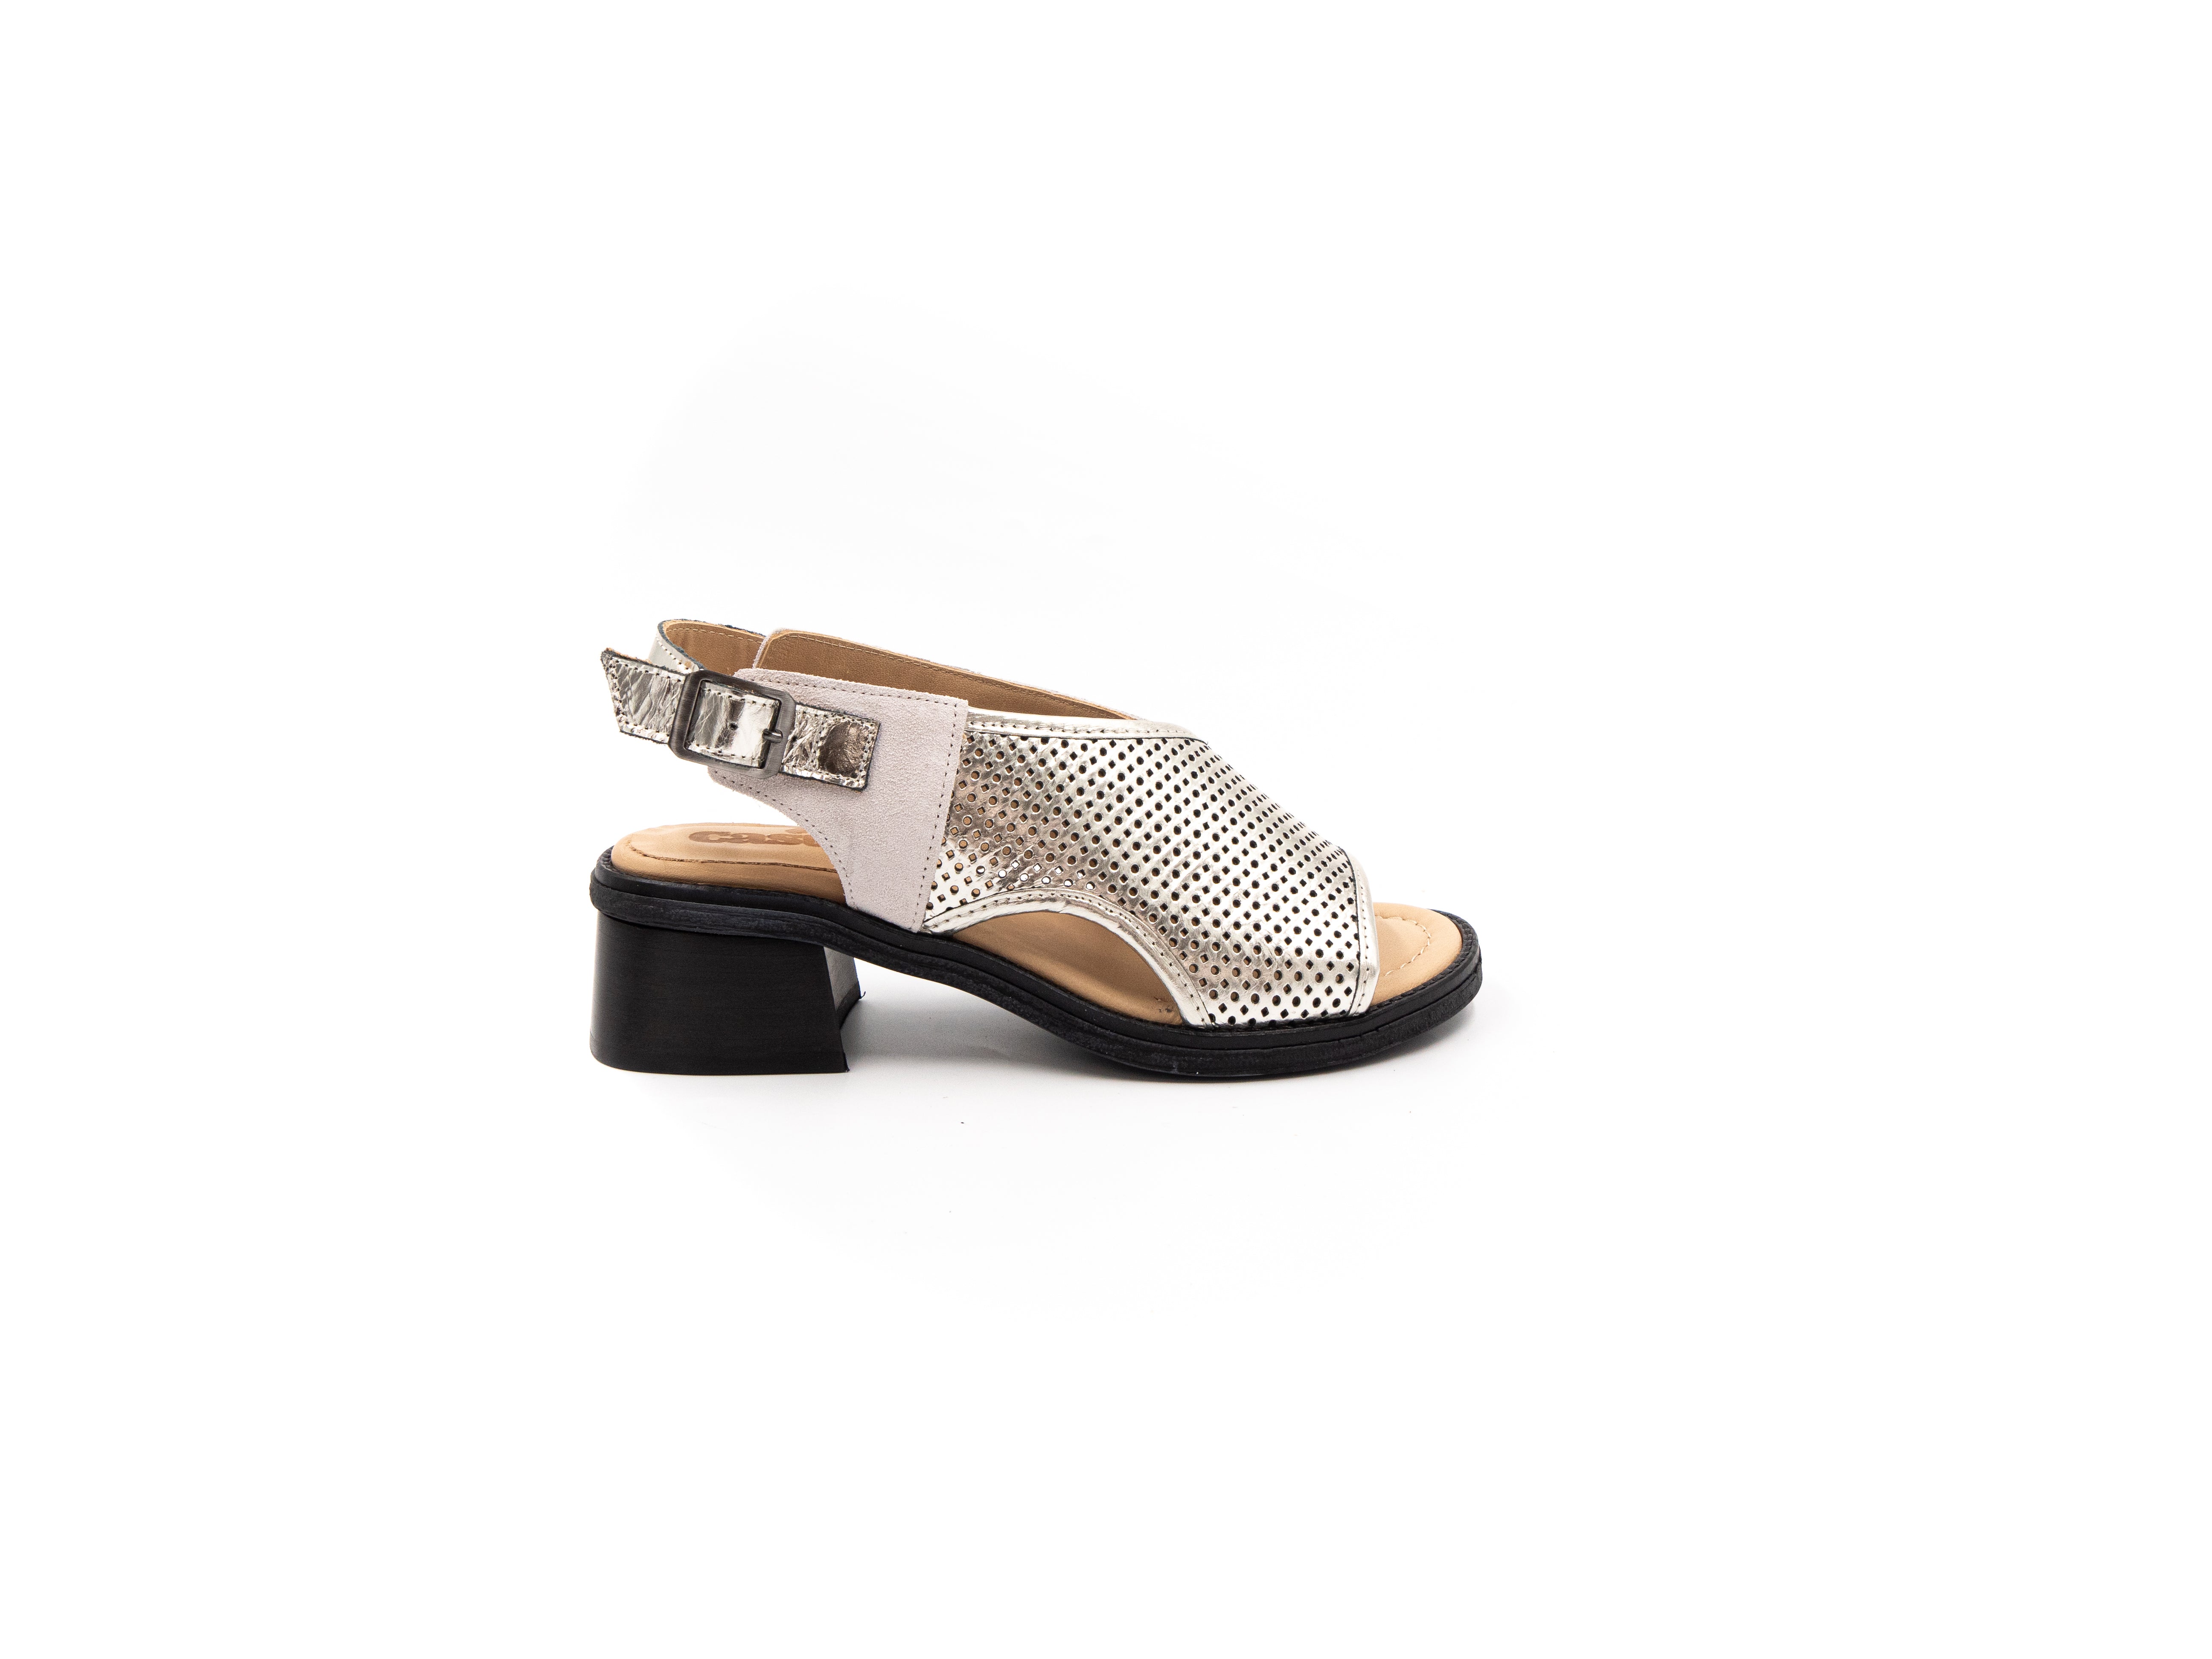 Sandals with small heels in beige tones.